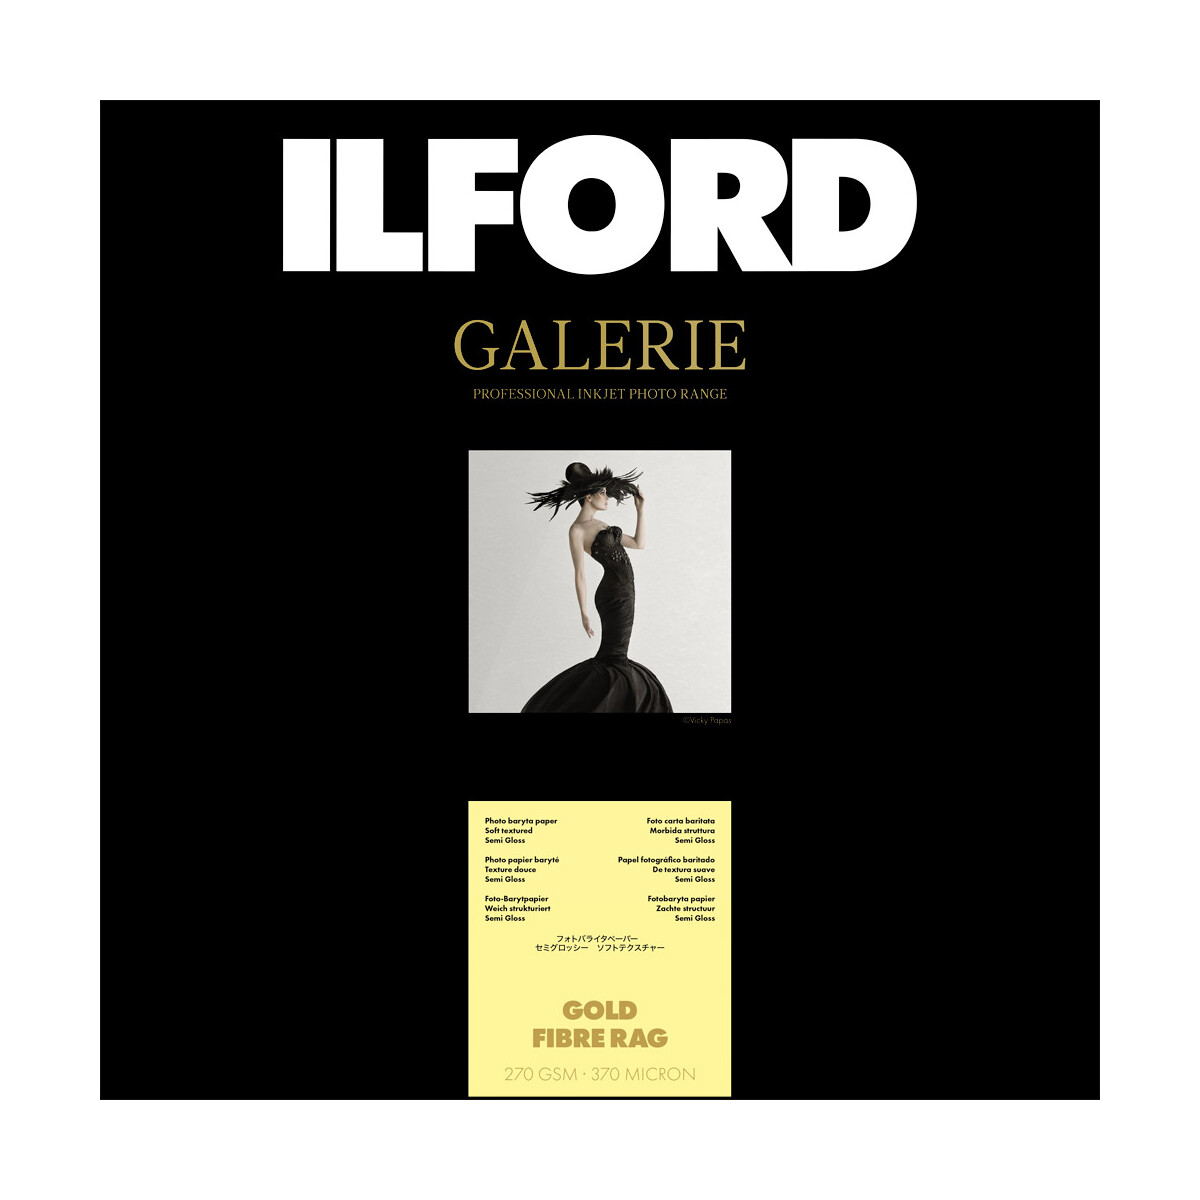 Ilford Galerie Gold Fibre Rag 270